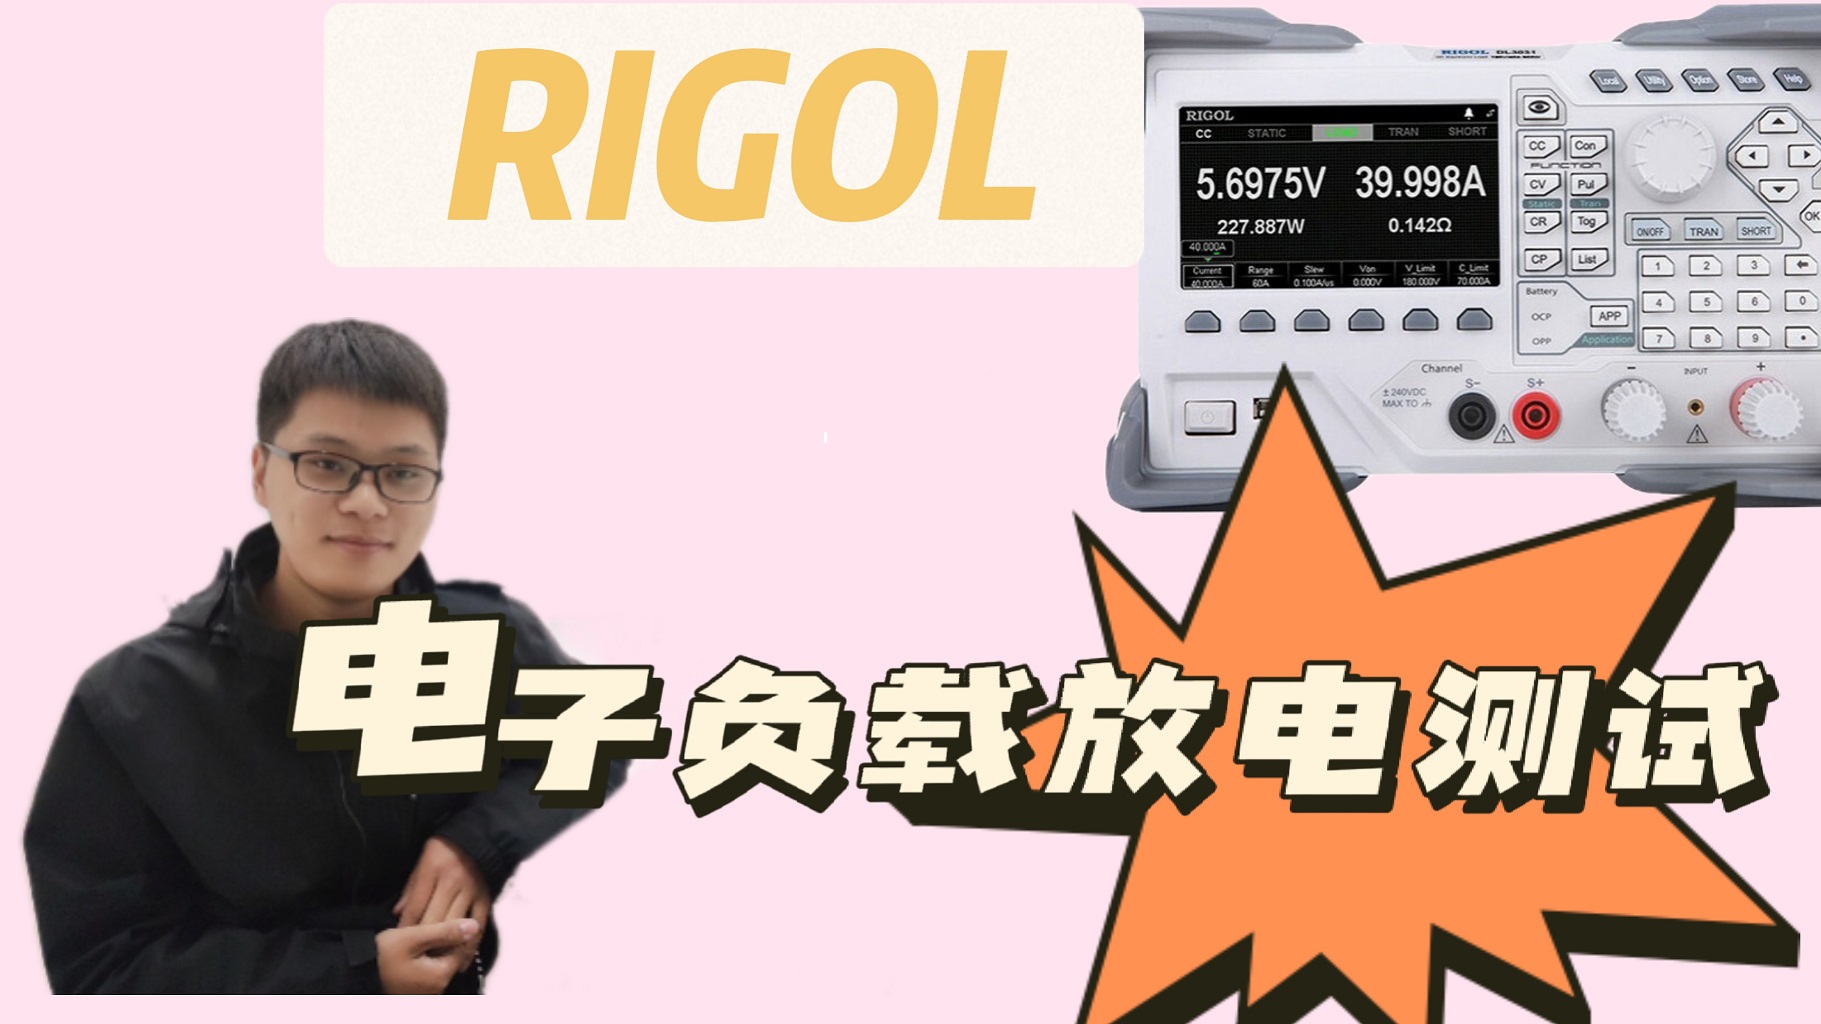 电池放电测试搞不定？学会这个方法，轻松玩转电池放电测试应用 #电子负载 
#电池放电测试 #RIGOL
 